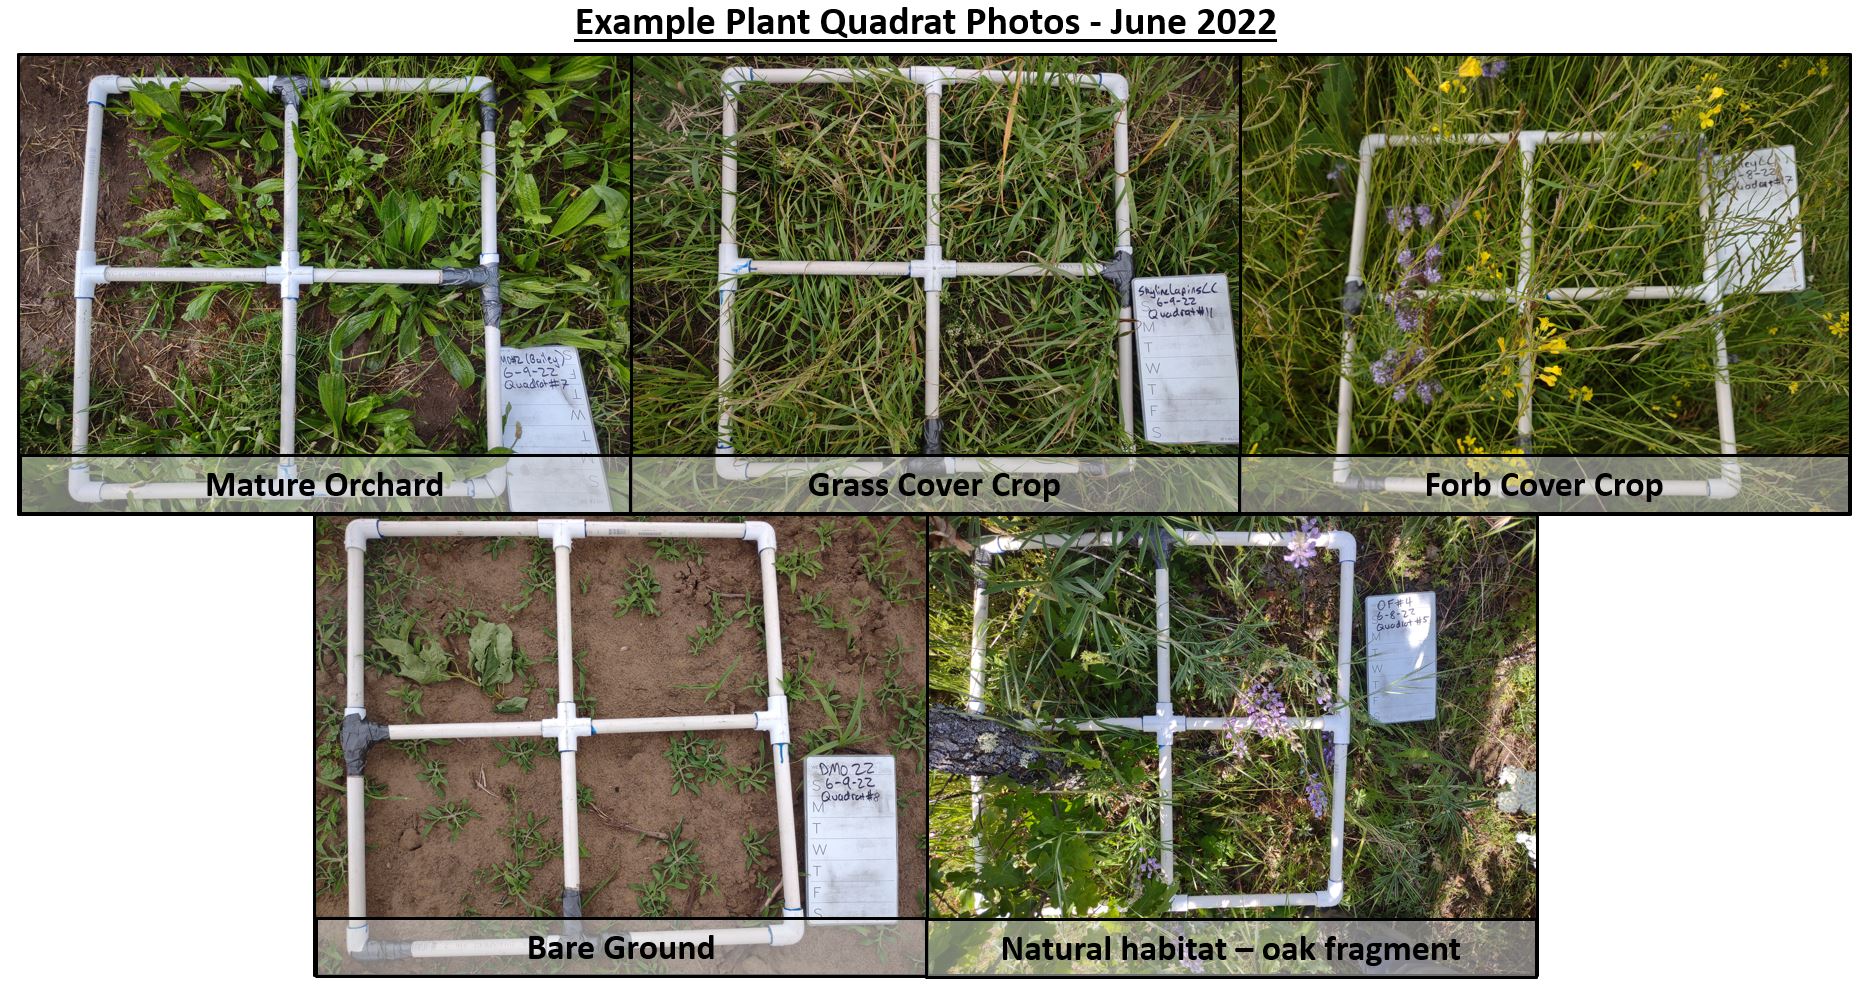 Figure 4: Plant Quadrat Examples